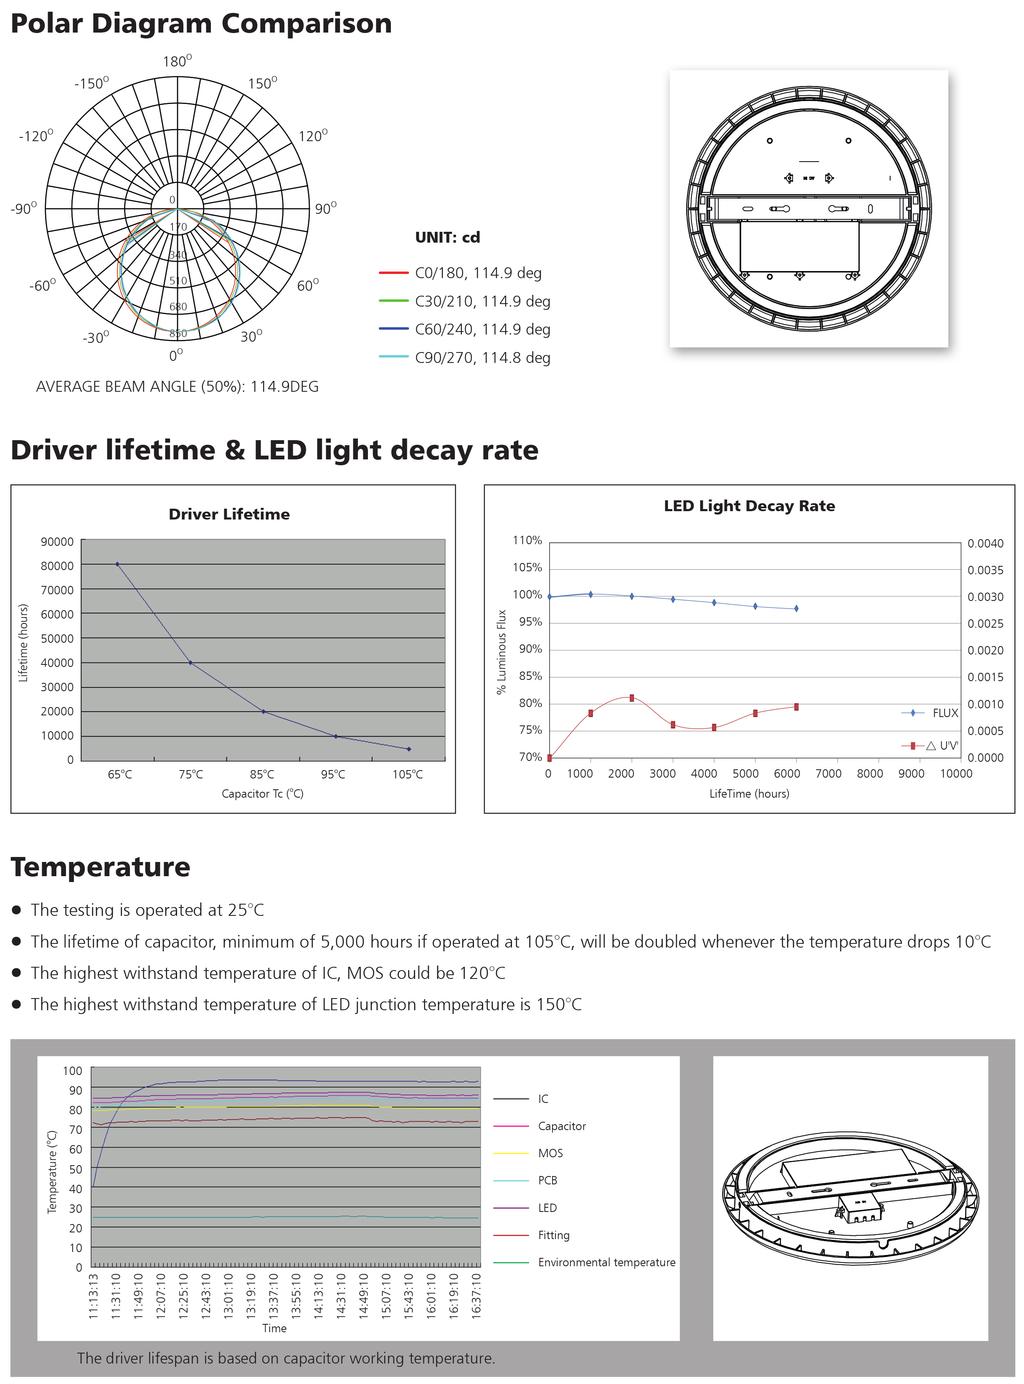 Indoor Polar Diagram Comparision Driver lifetime &